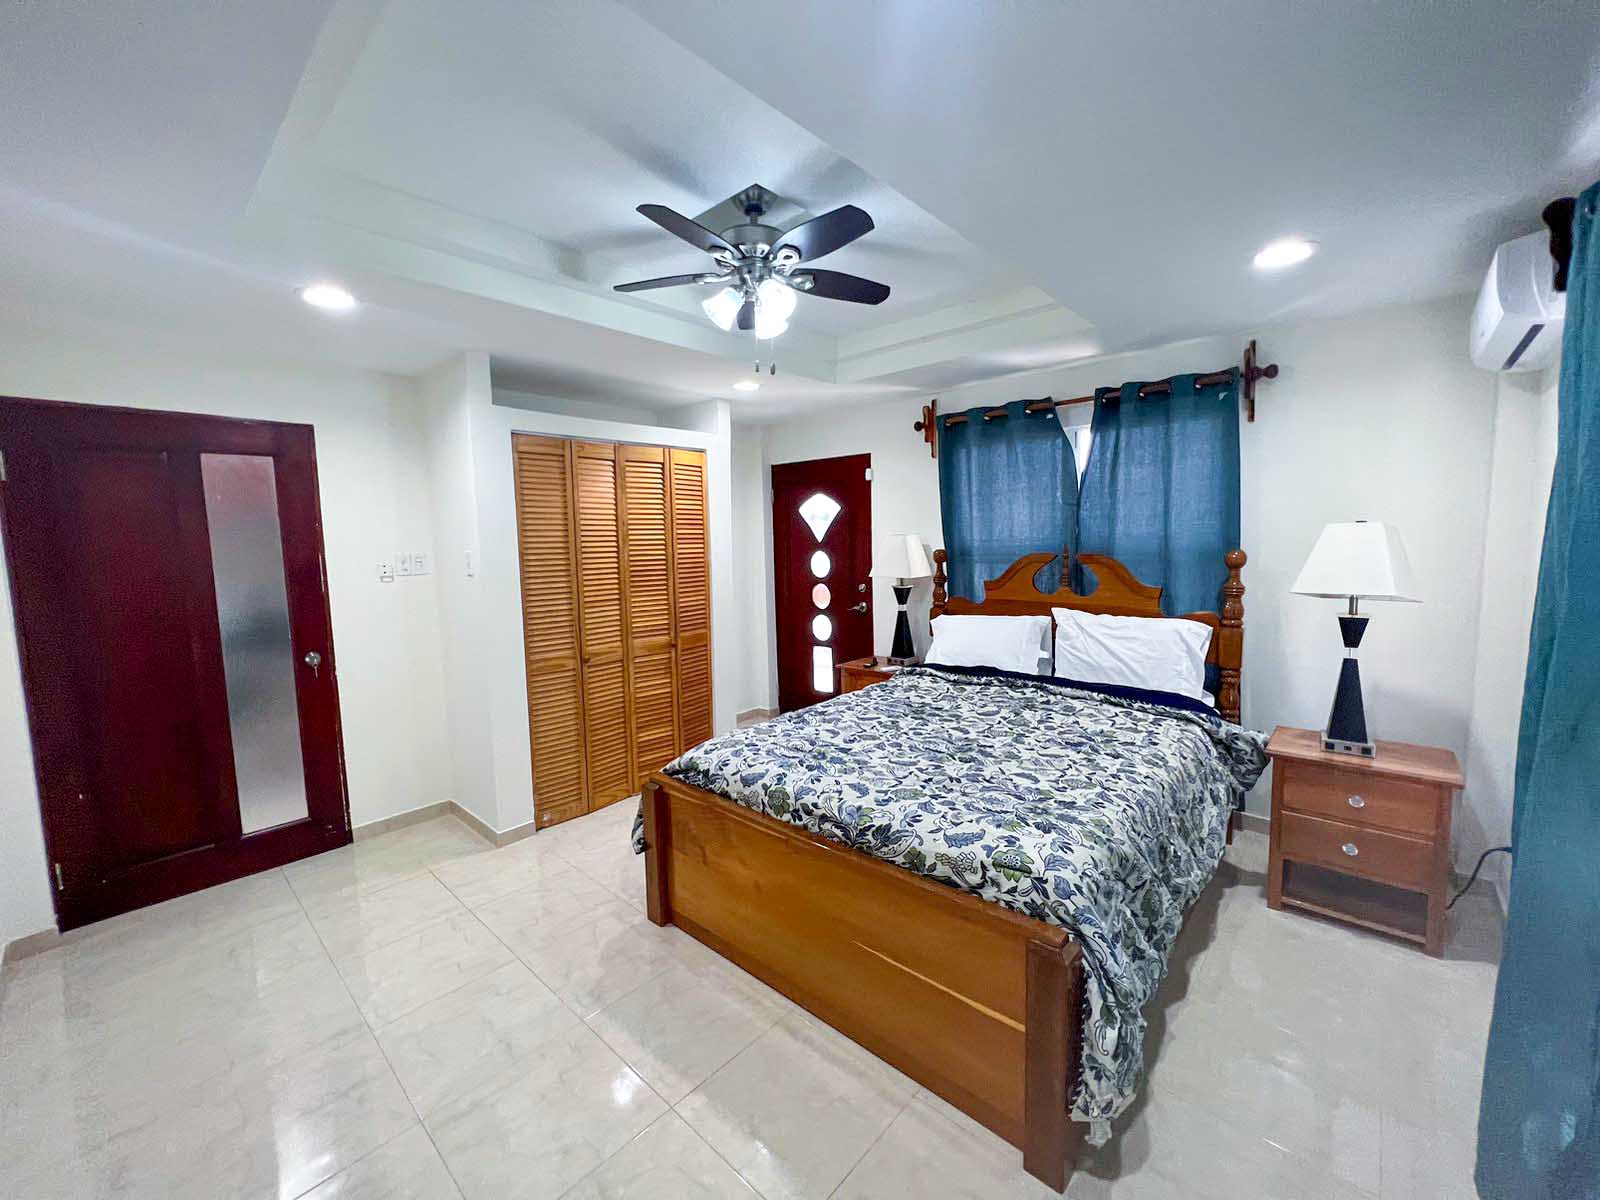 FOR-RENT: Furnished 1 Bed Apartment located in West Landivar, Belize City, Belize.